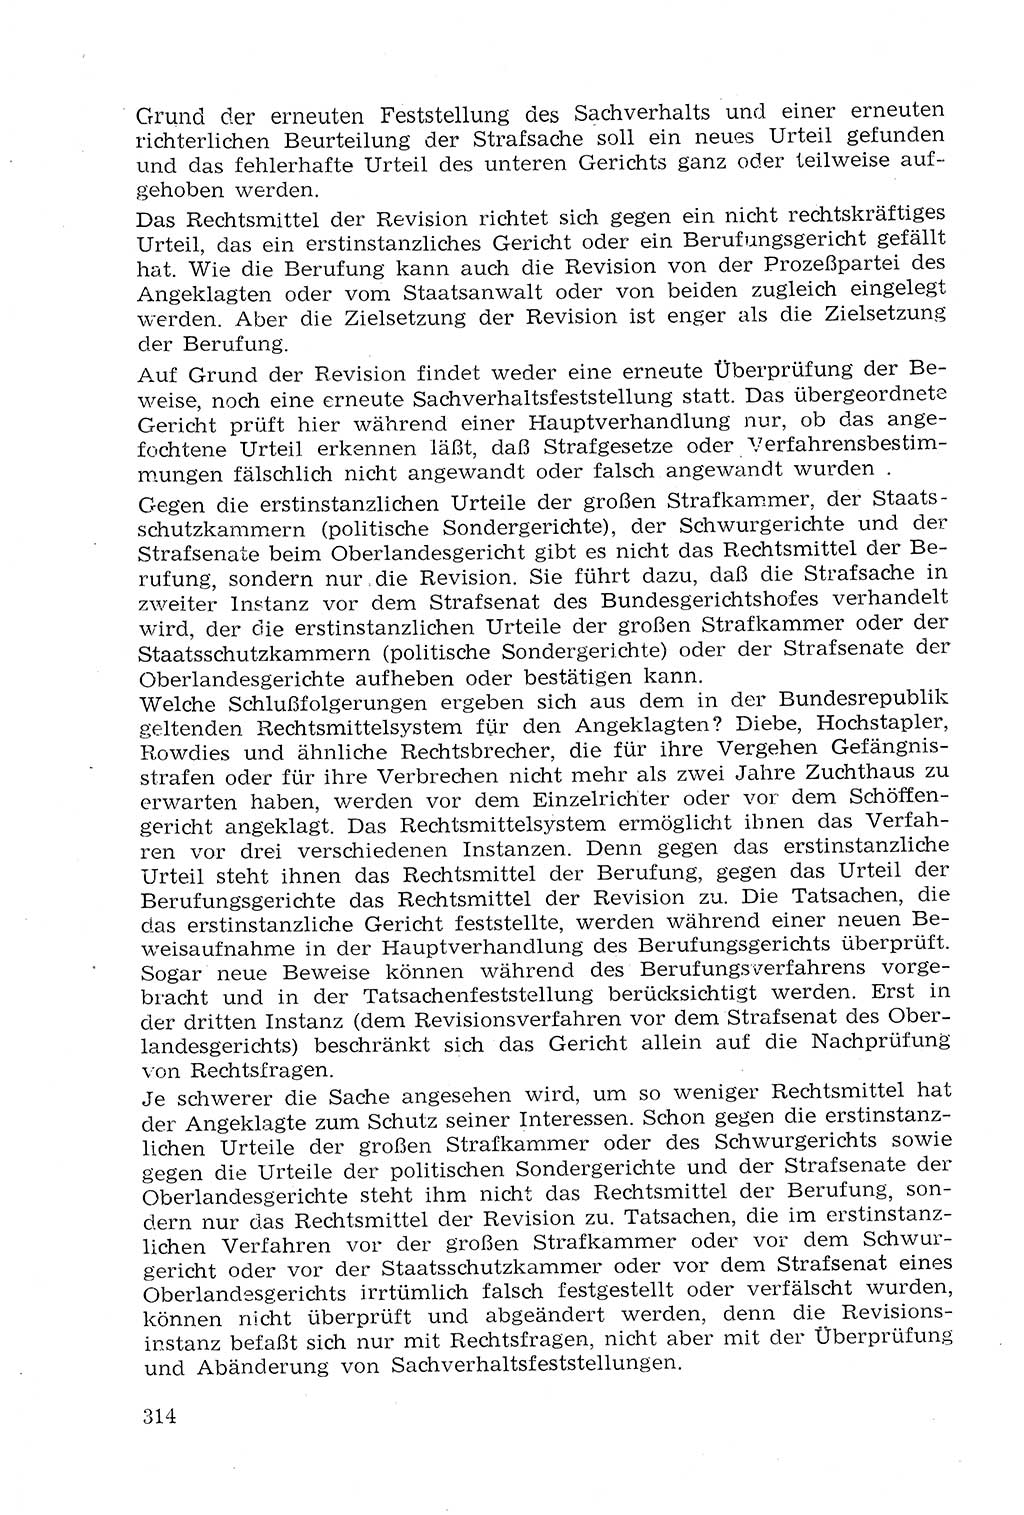 Strafprozeßrecht der DDR (Deutsche Demokratische Republik), Lehrmaterial 1969, Seite 314 (Strafprozeßr. DDR Lehrmat. 1969, S. 314)